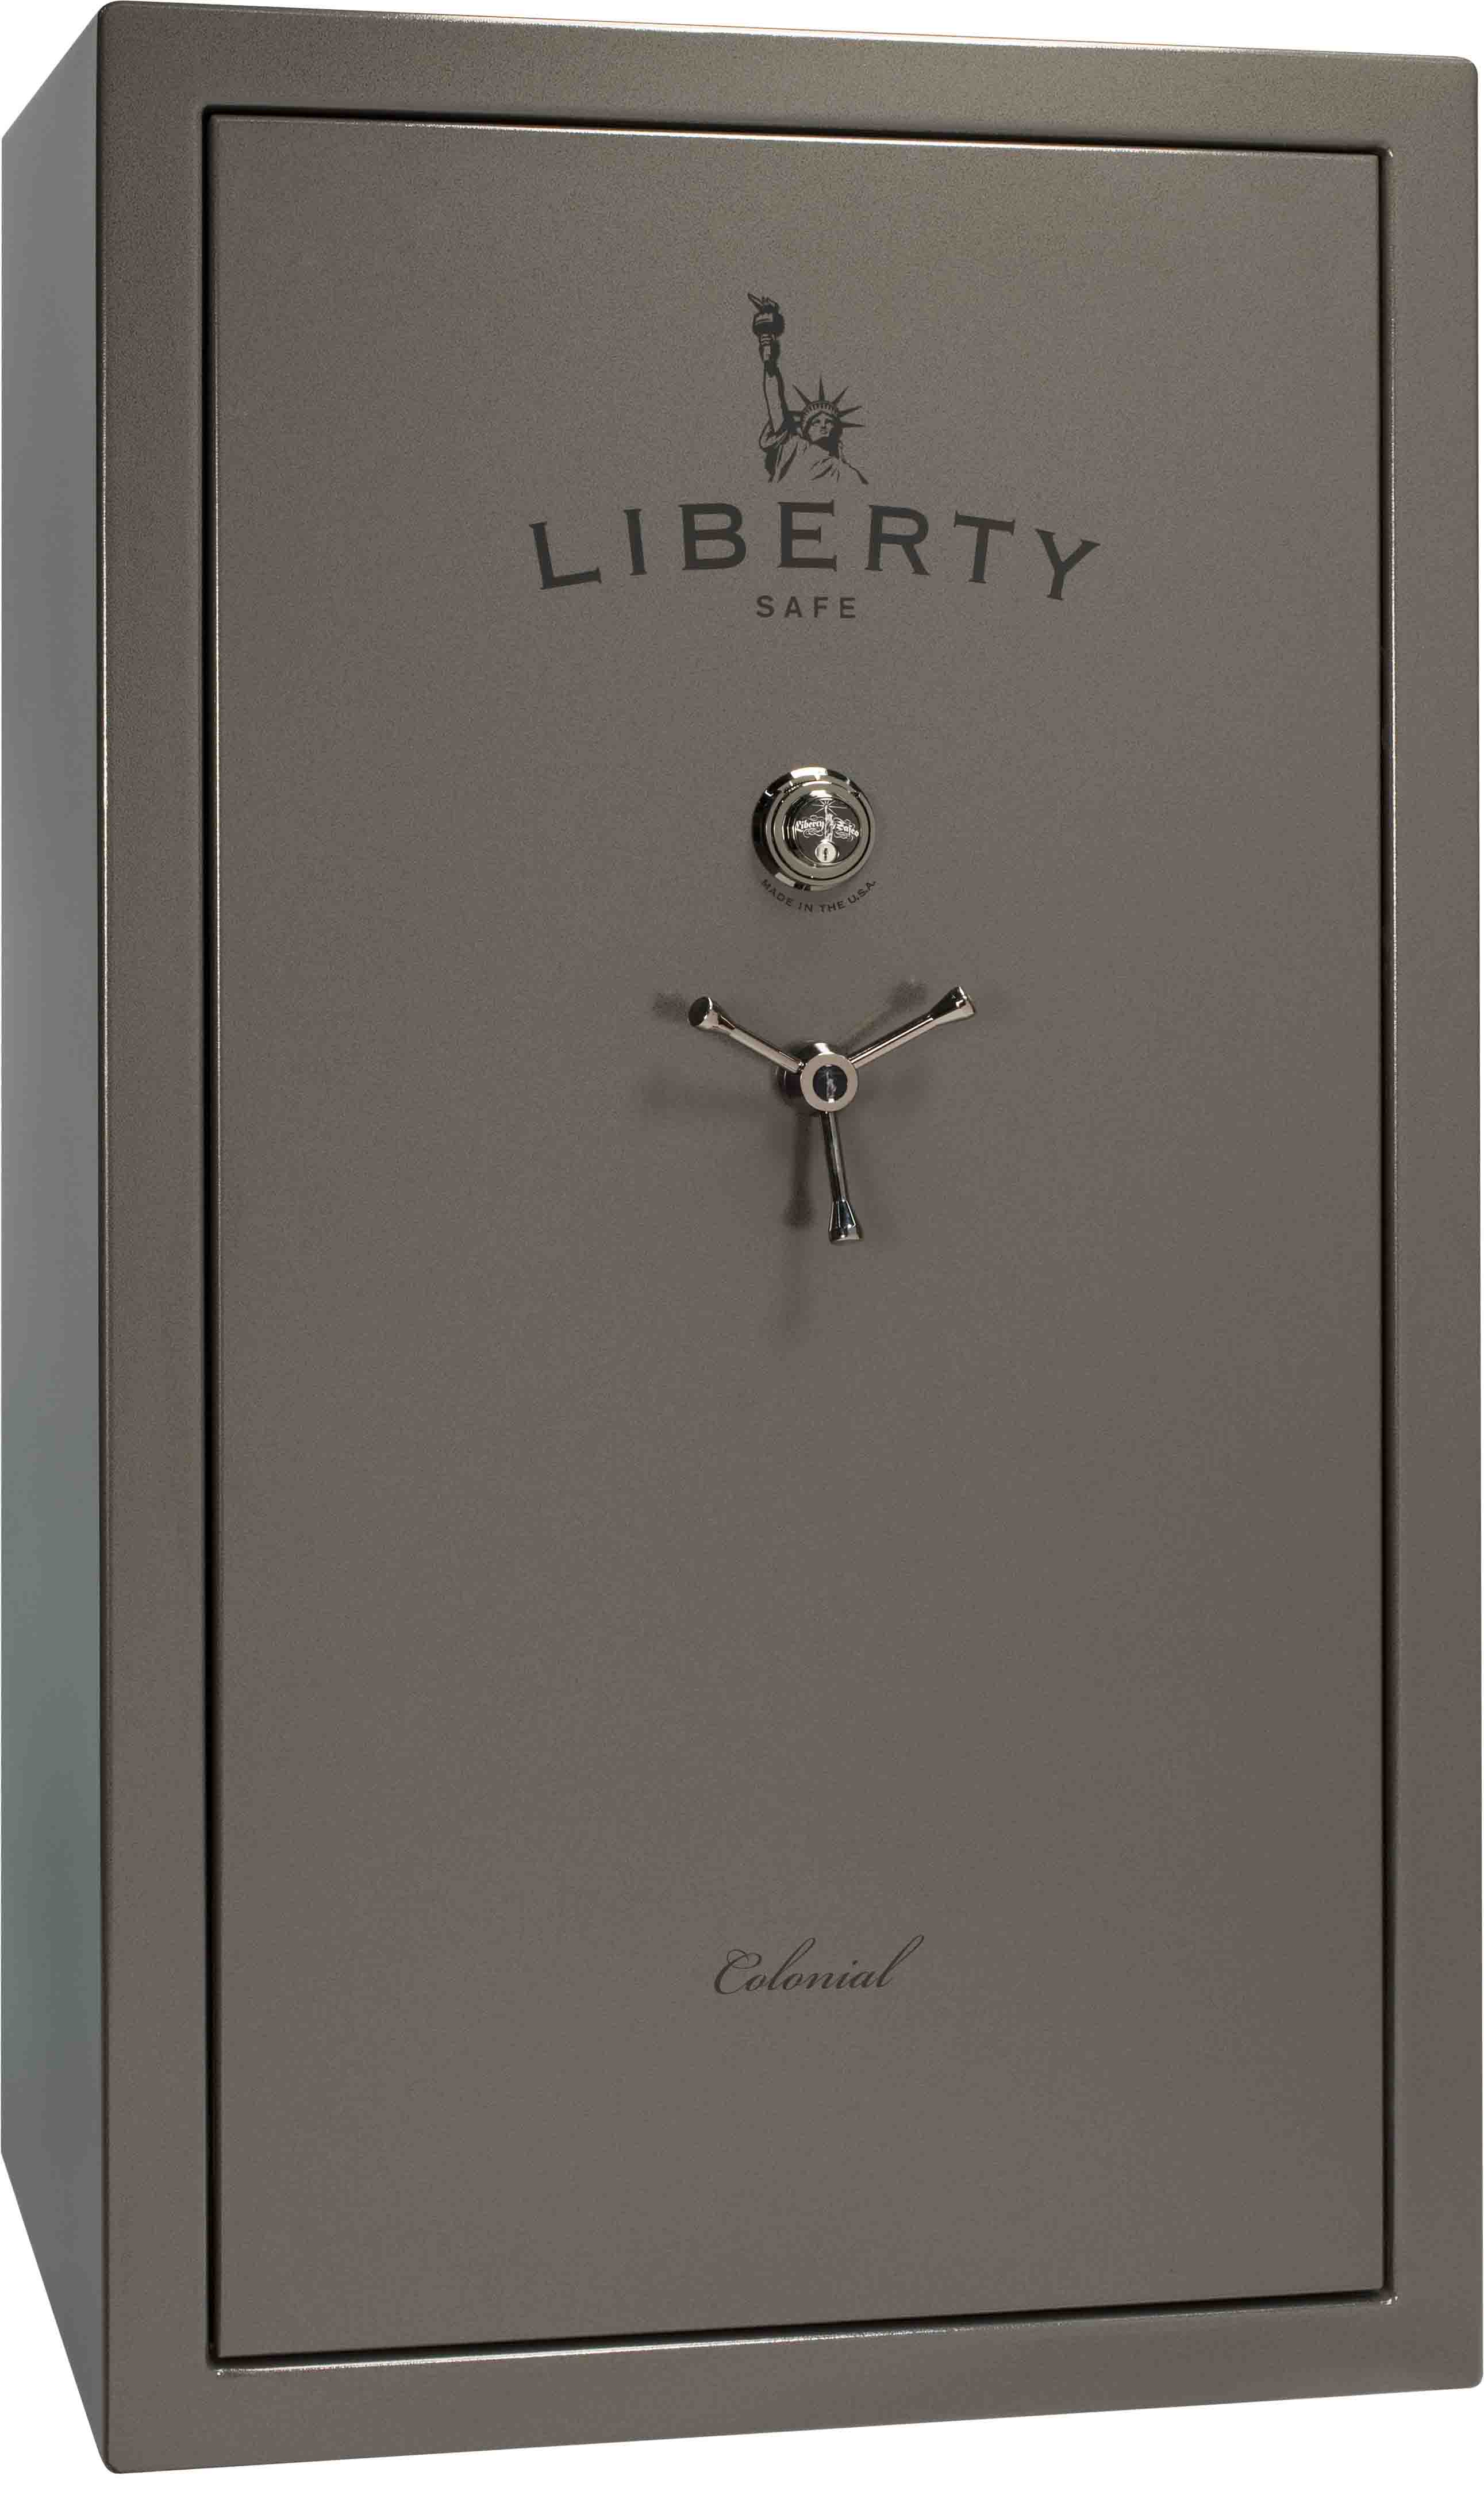 Vault Doors Secret Vault Doors For Homes Highly Secure Custom